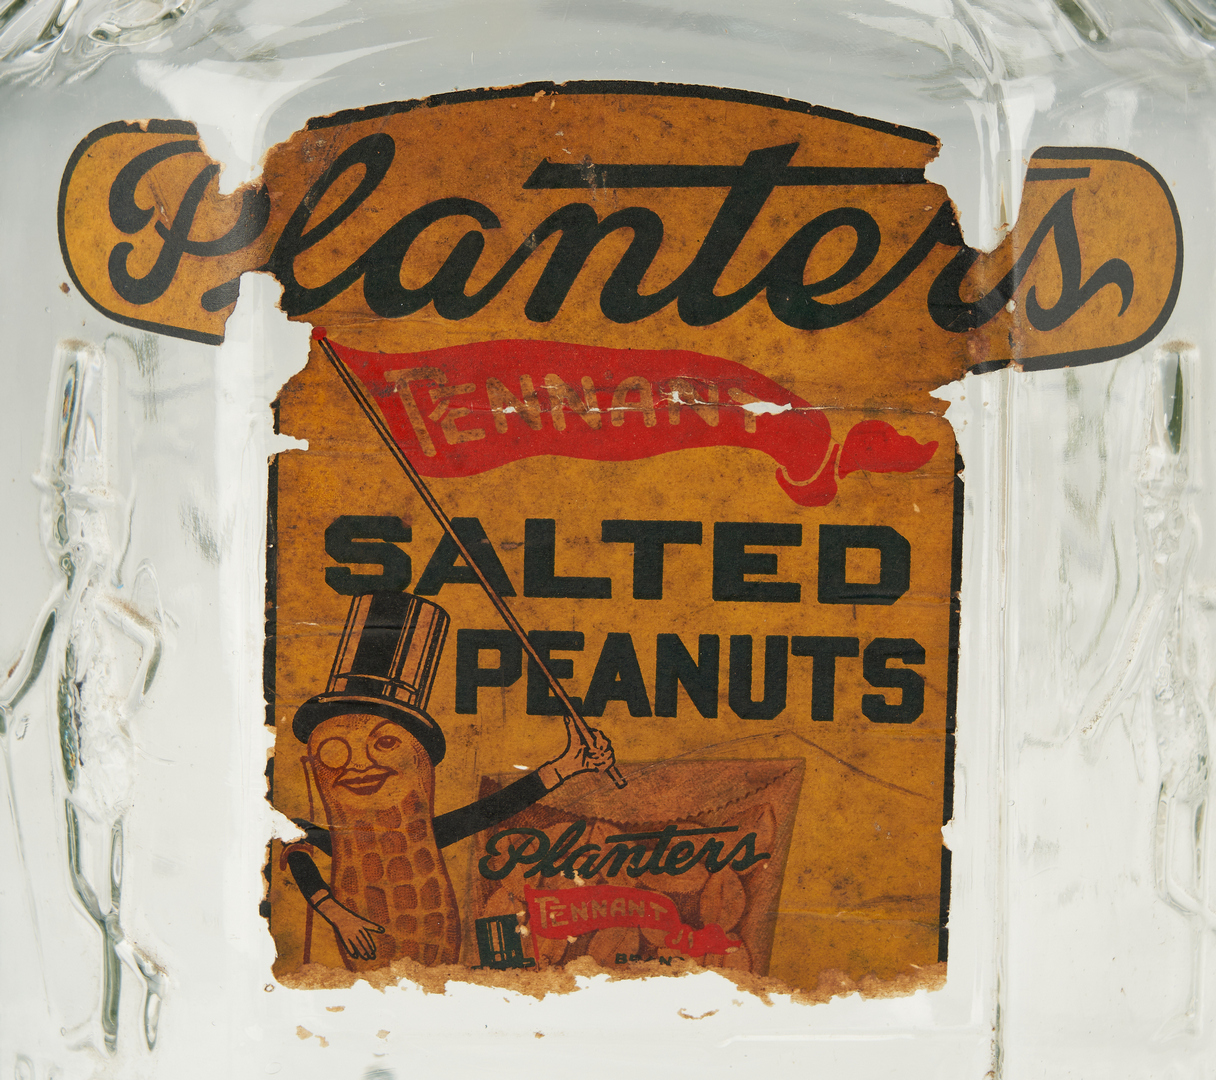 Lot 1176: 3 Planters Peanuts Advertising Jars